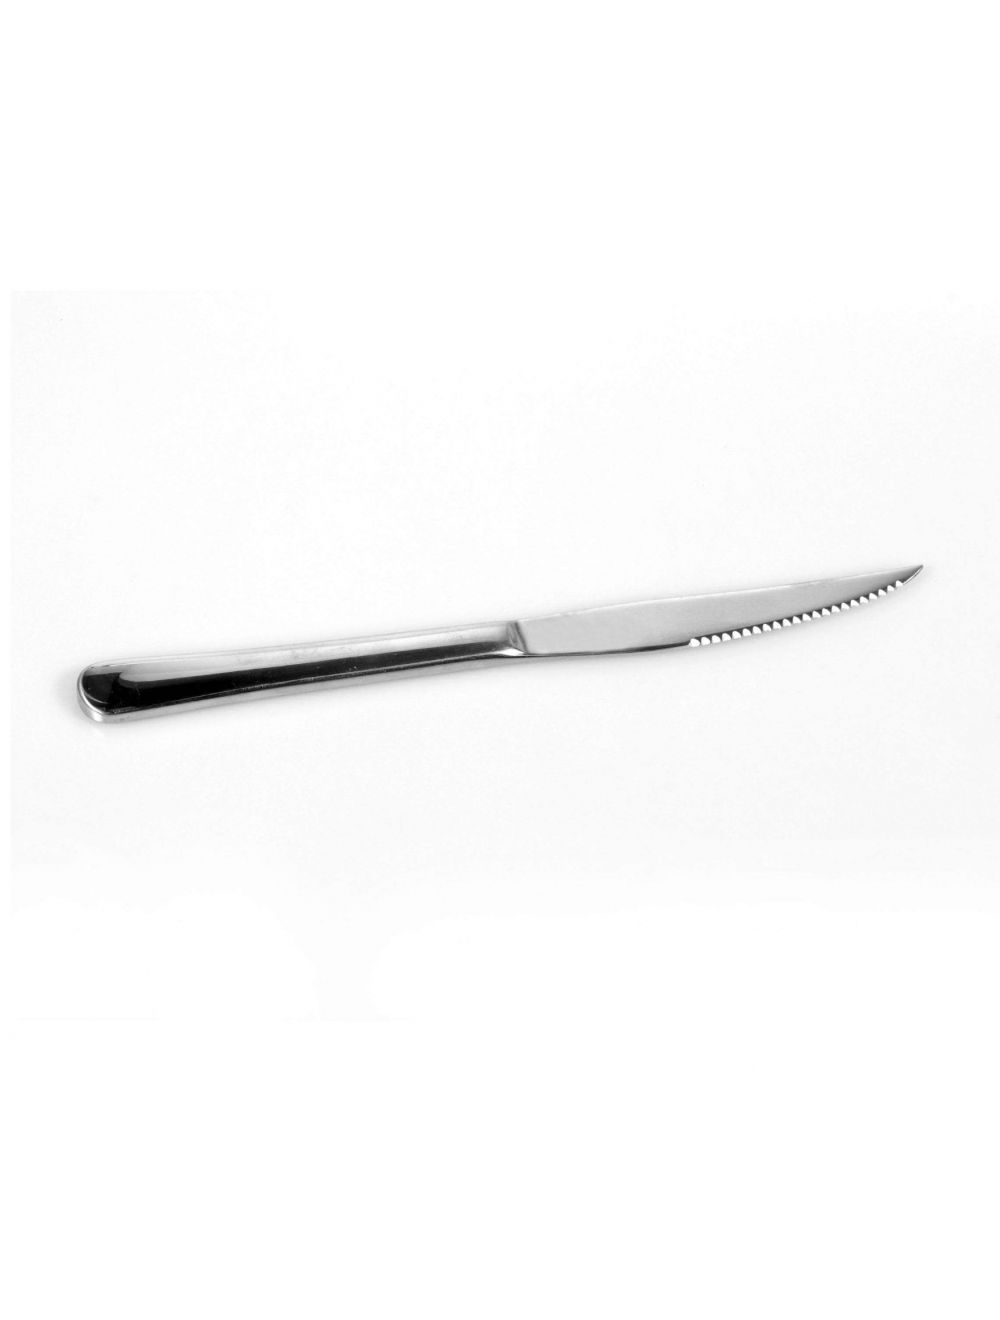 Royalford RF8673 Stainless Steel Steak Knife Set, 2 Pcs